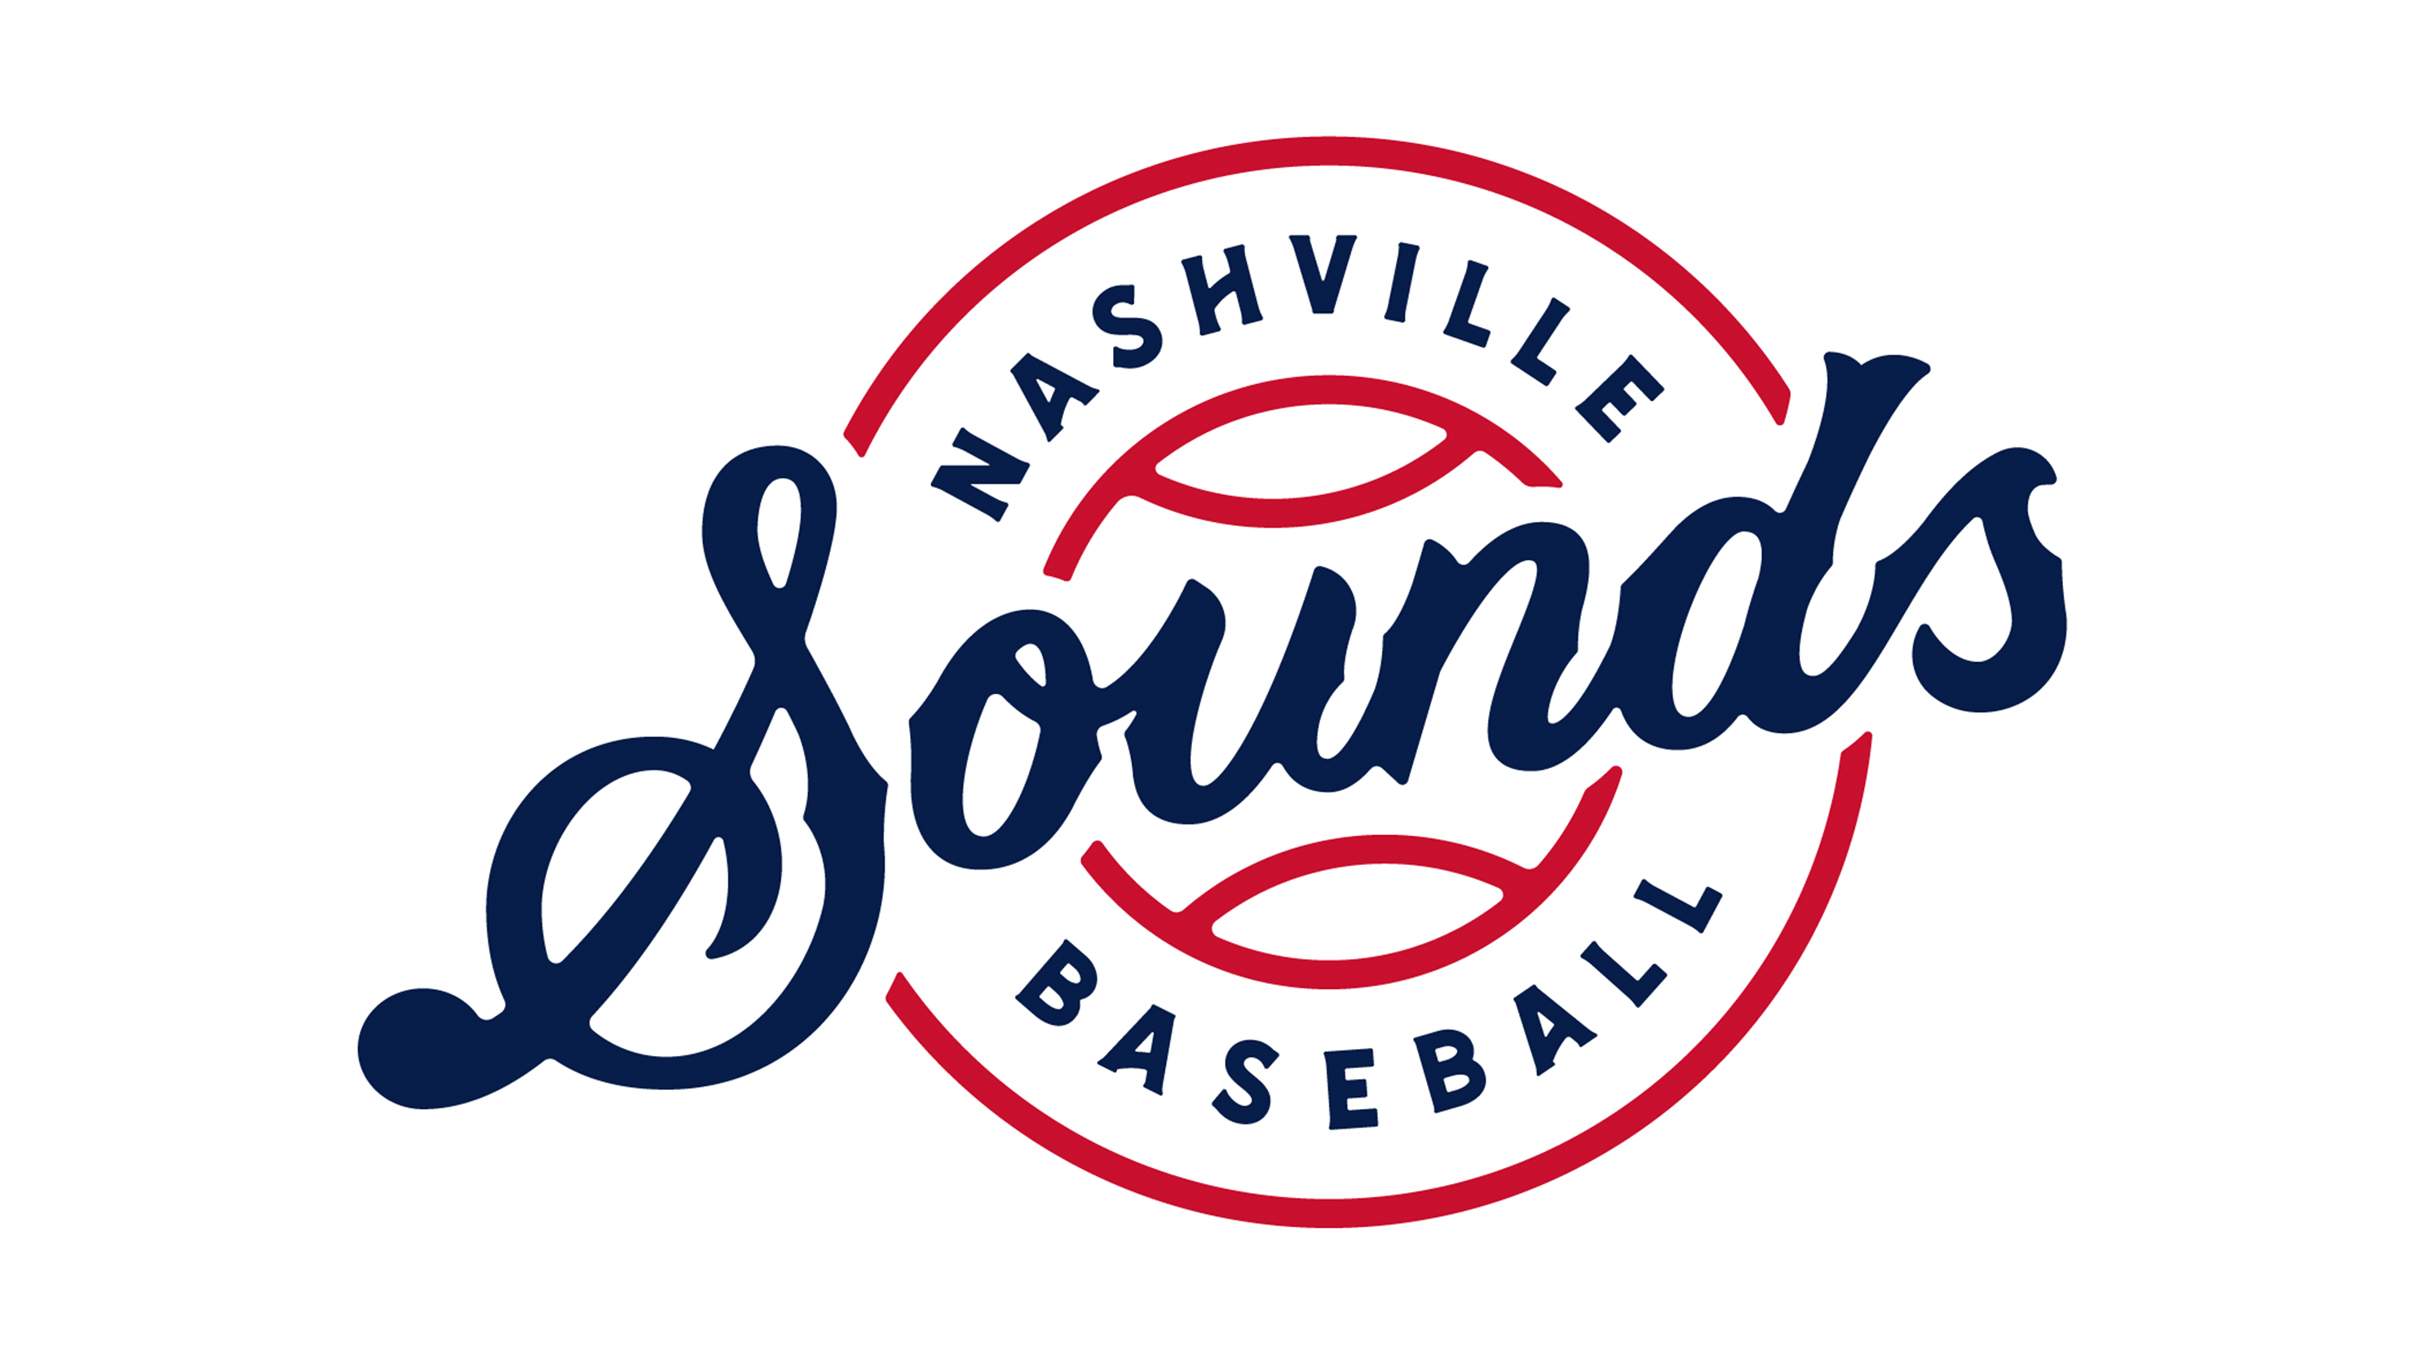 Nashville Sounds vs. Louisville Bats